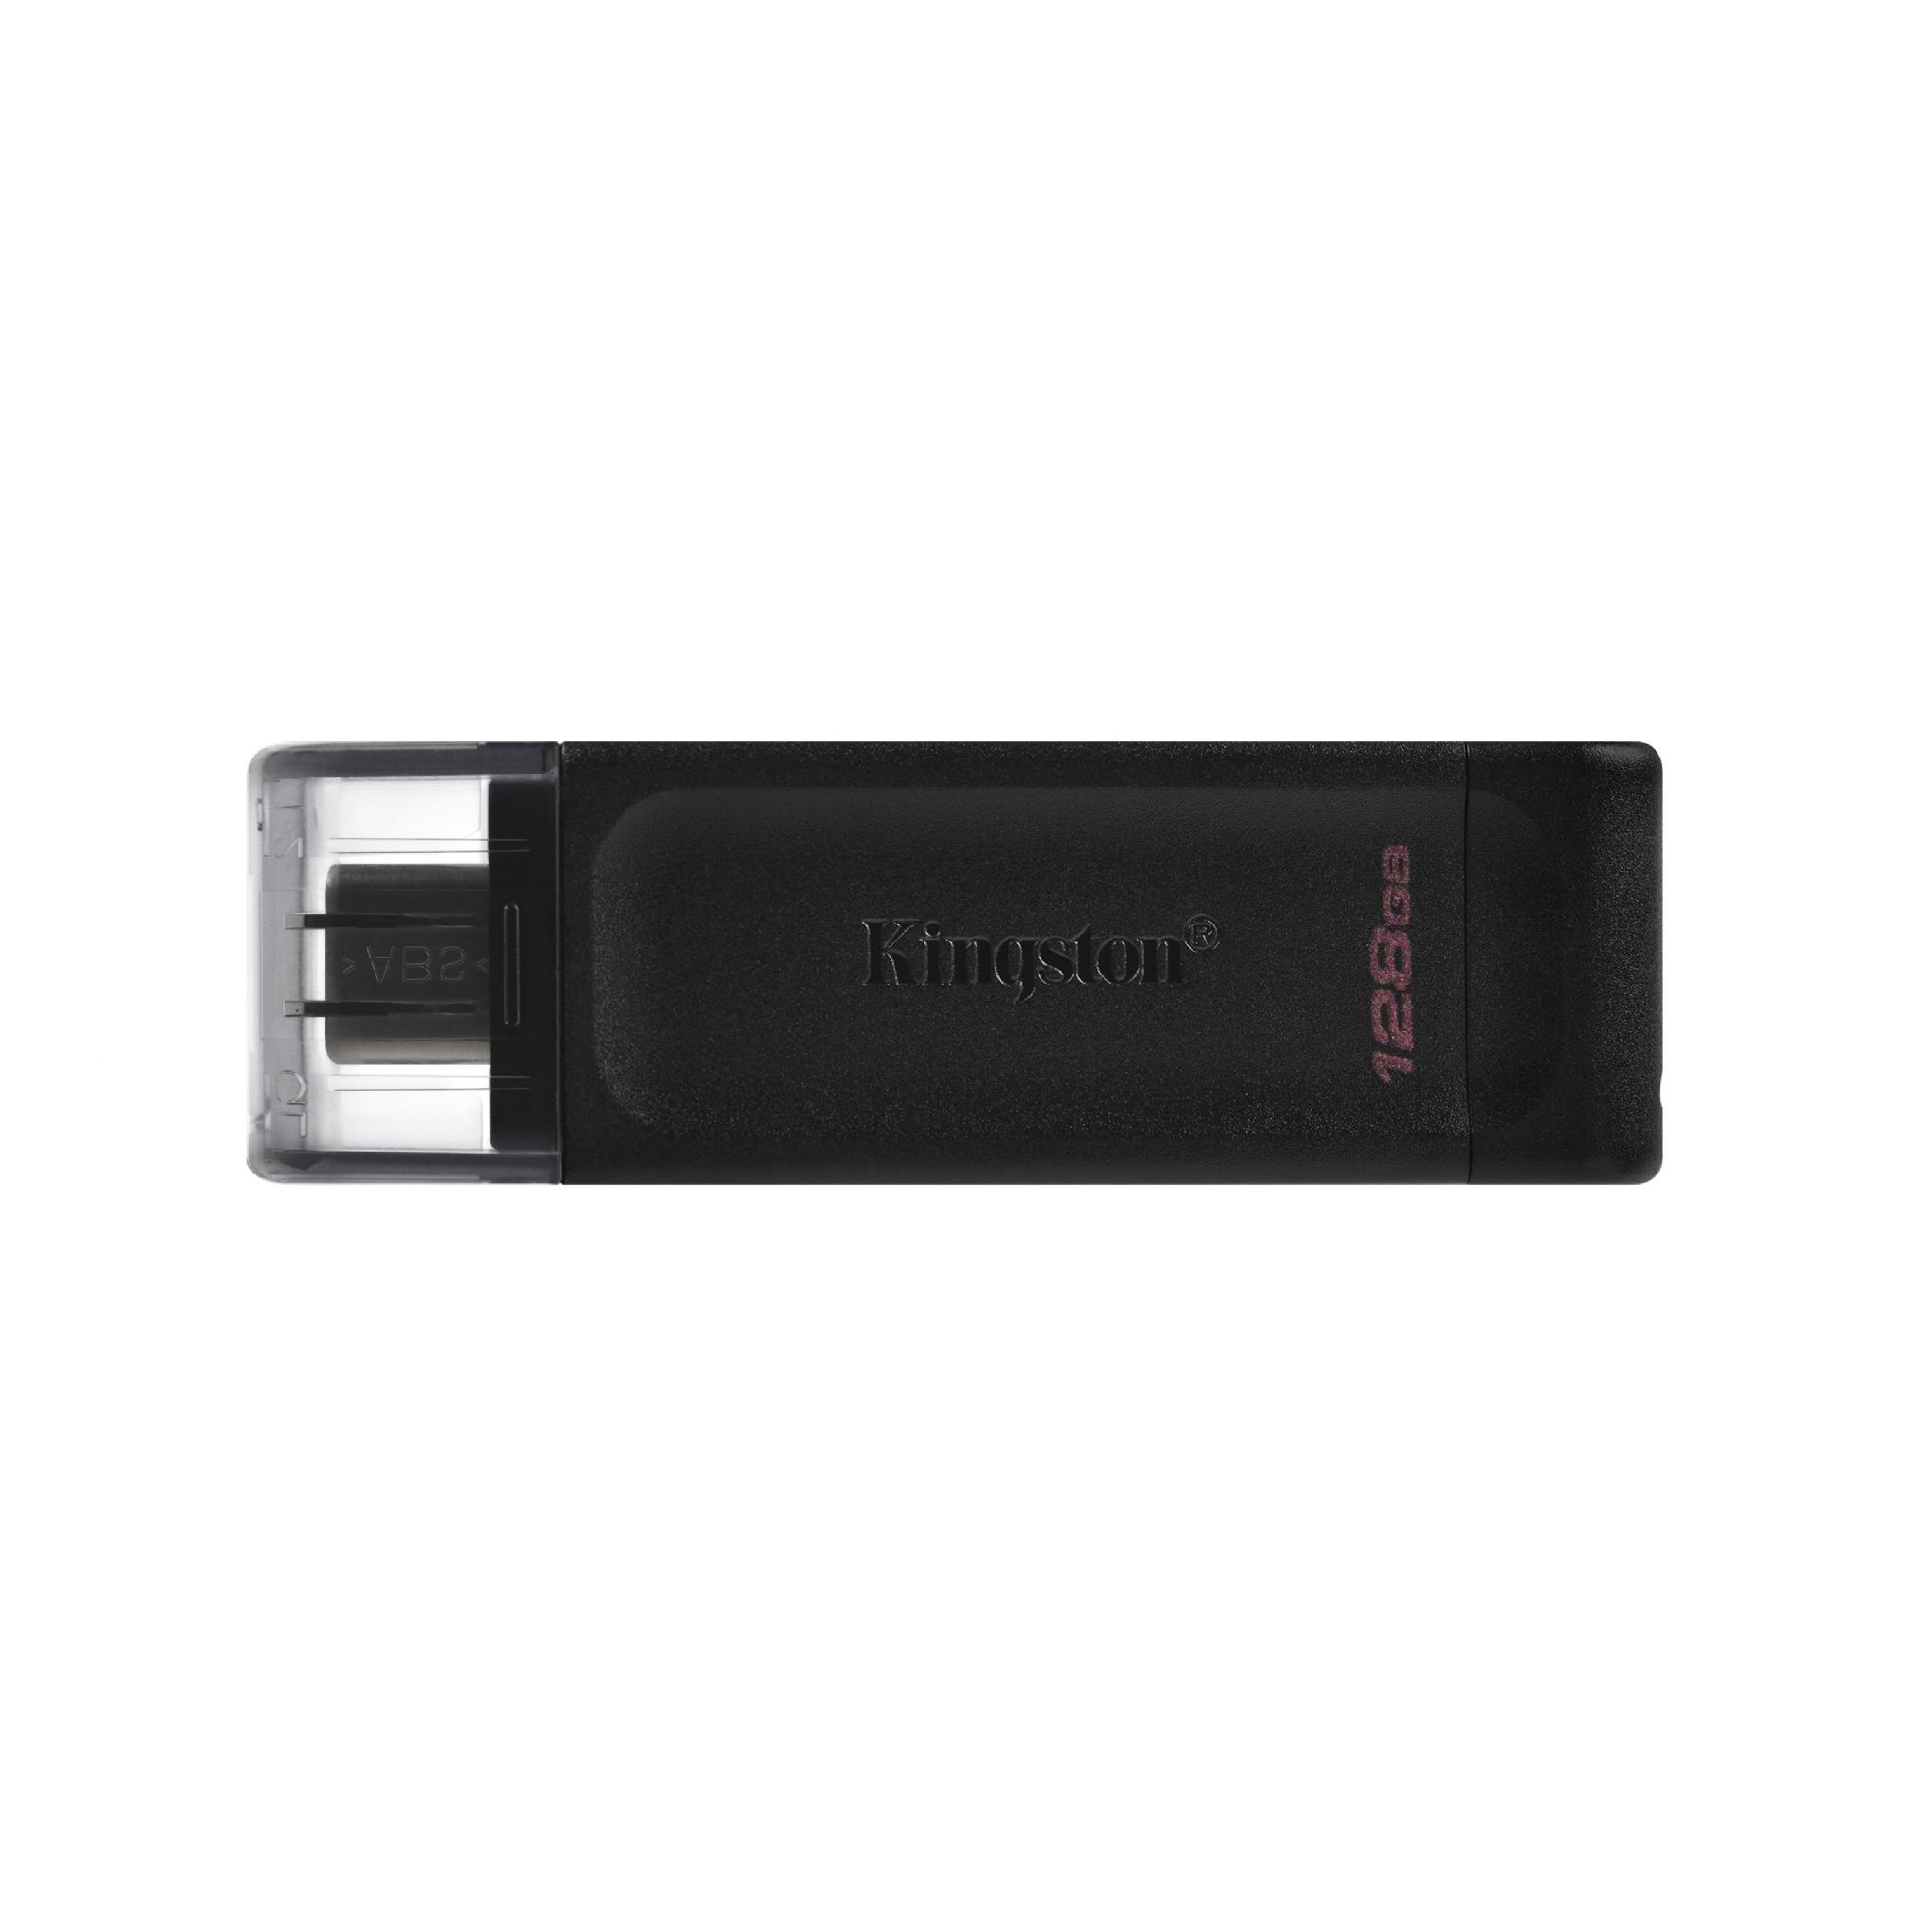 KINGSTON DT70/128GB USB Stick (schwarz, 128 GB)